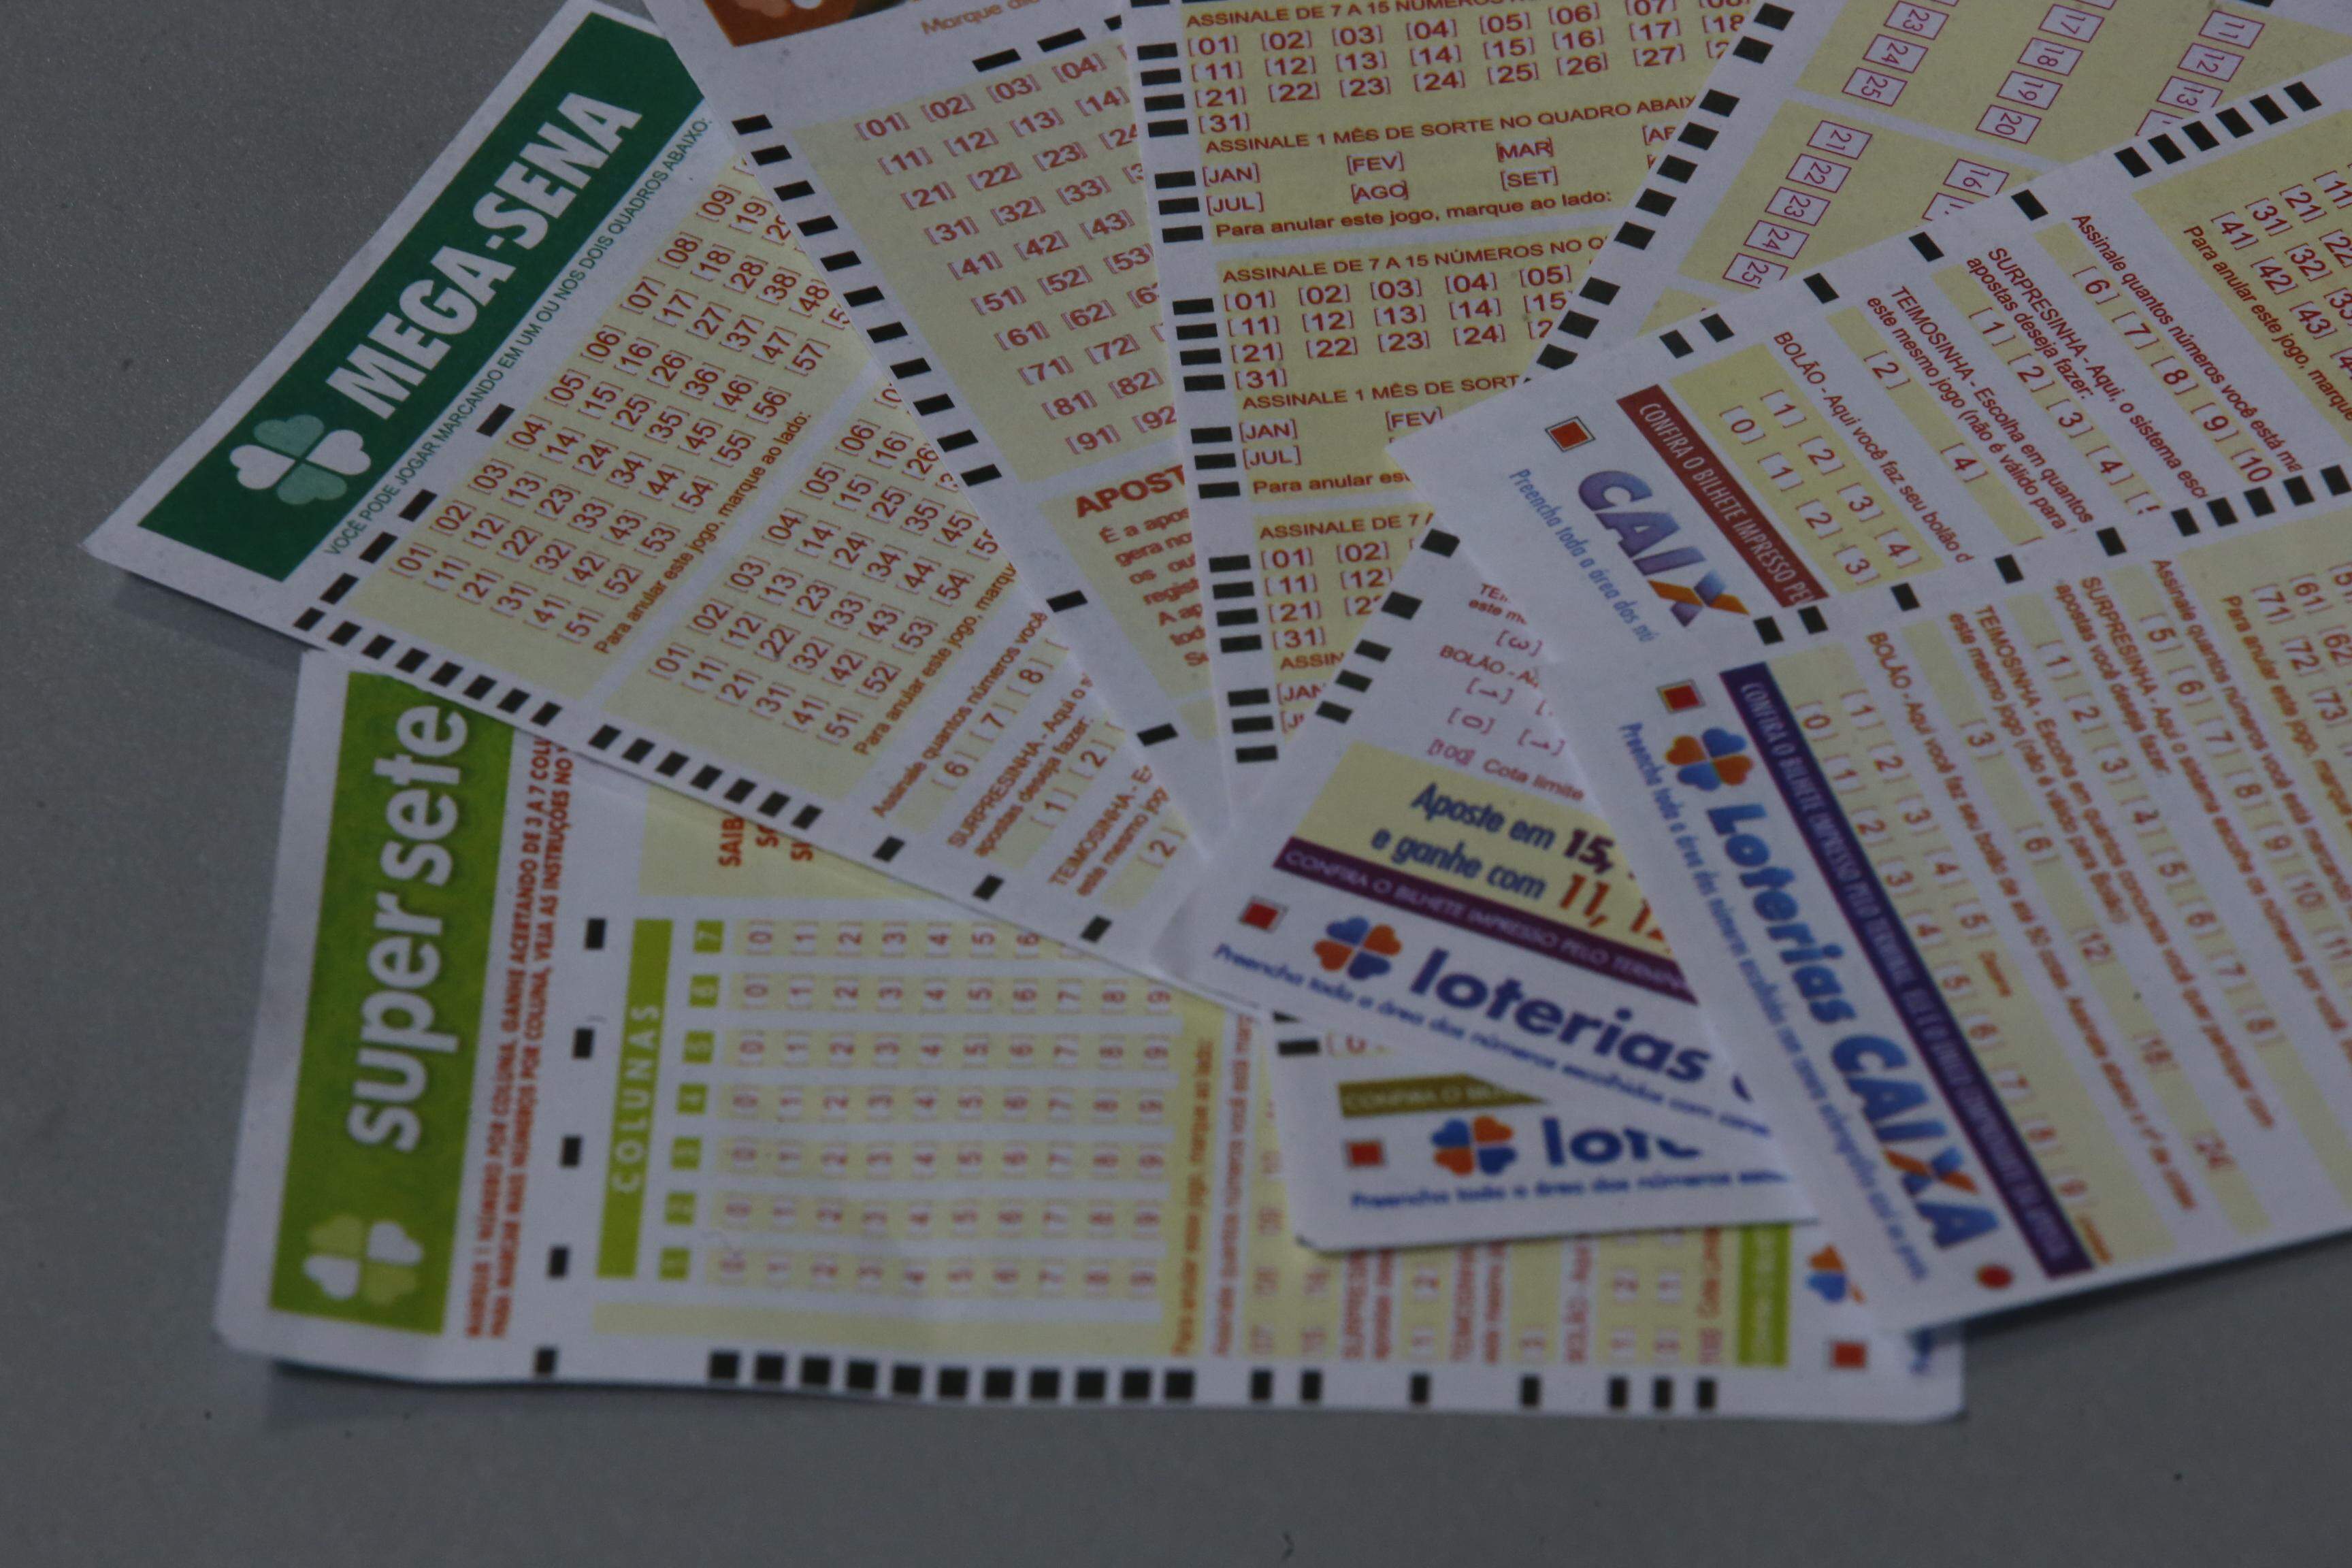 O que é Surpresinha, Teimosinha e Bolão ( Como Funciona ) Loteria